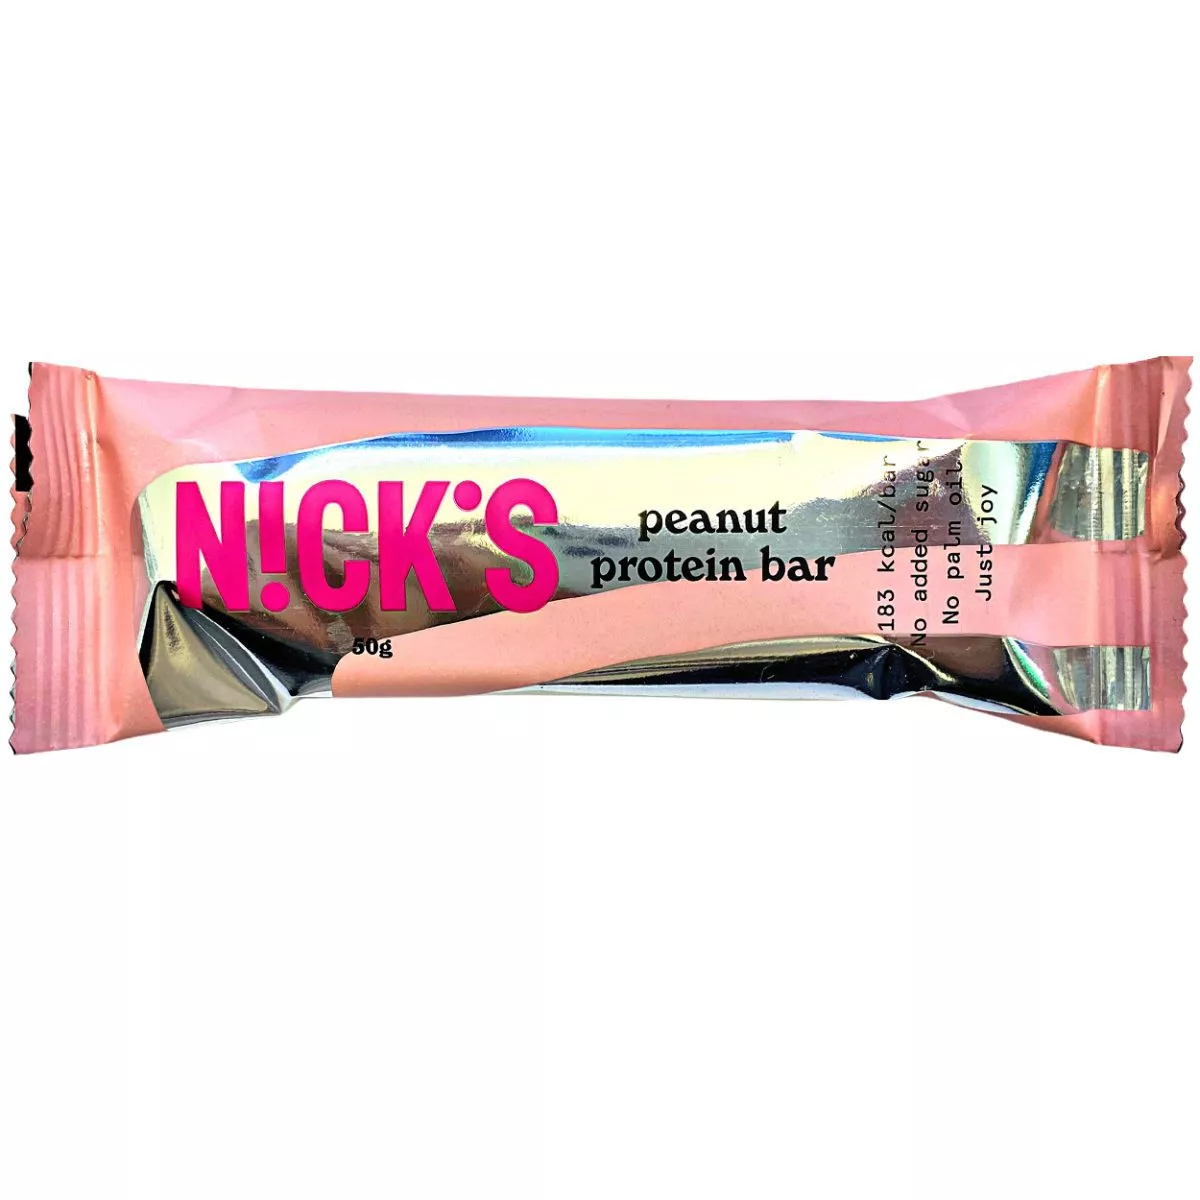 NICK'S Protein bar peanut - ohne Zuckerzusatz (50g) 1